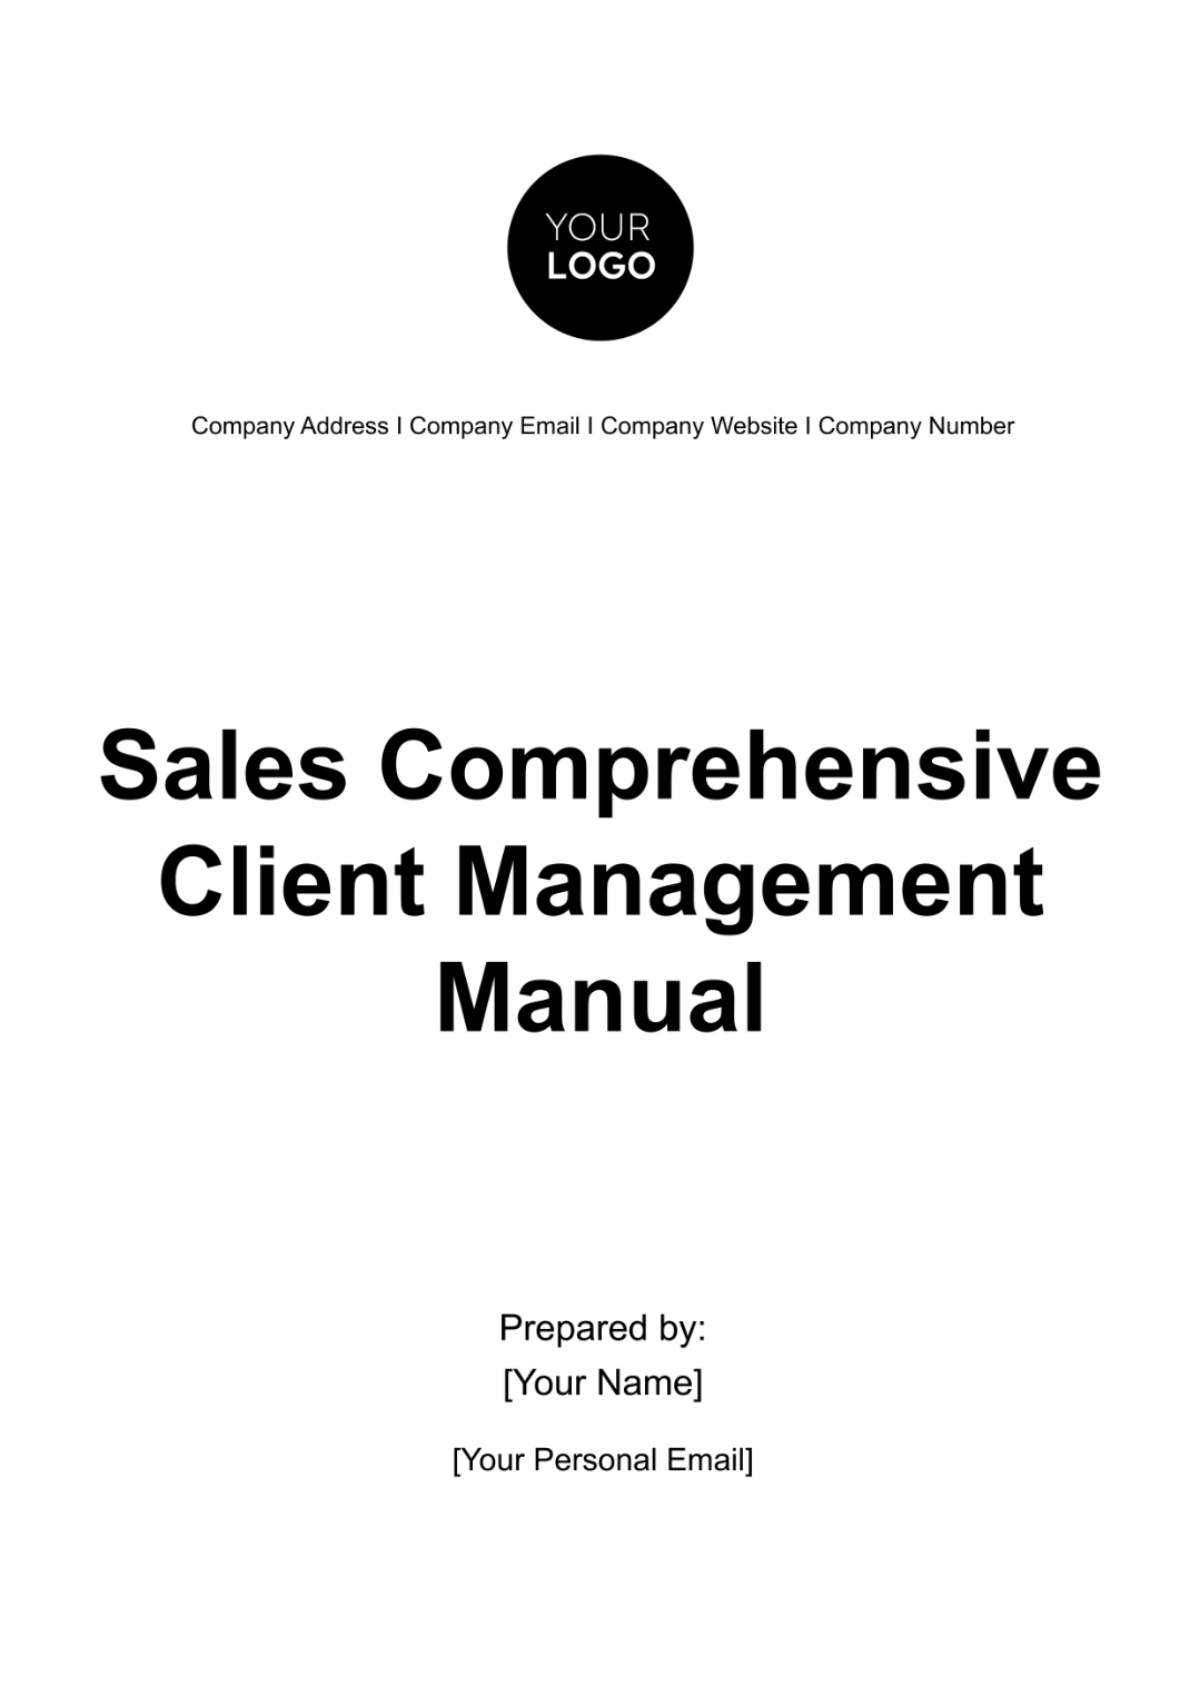 Sales Comprehensive Client Management Manual Template